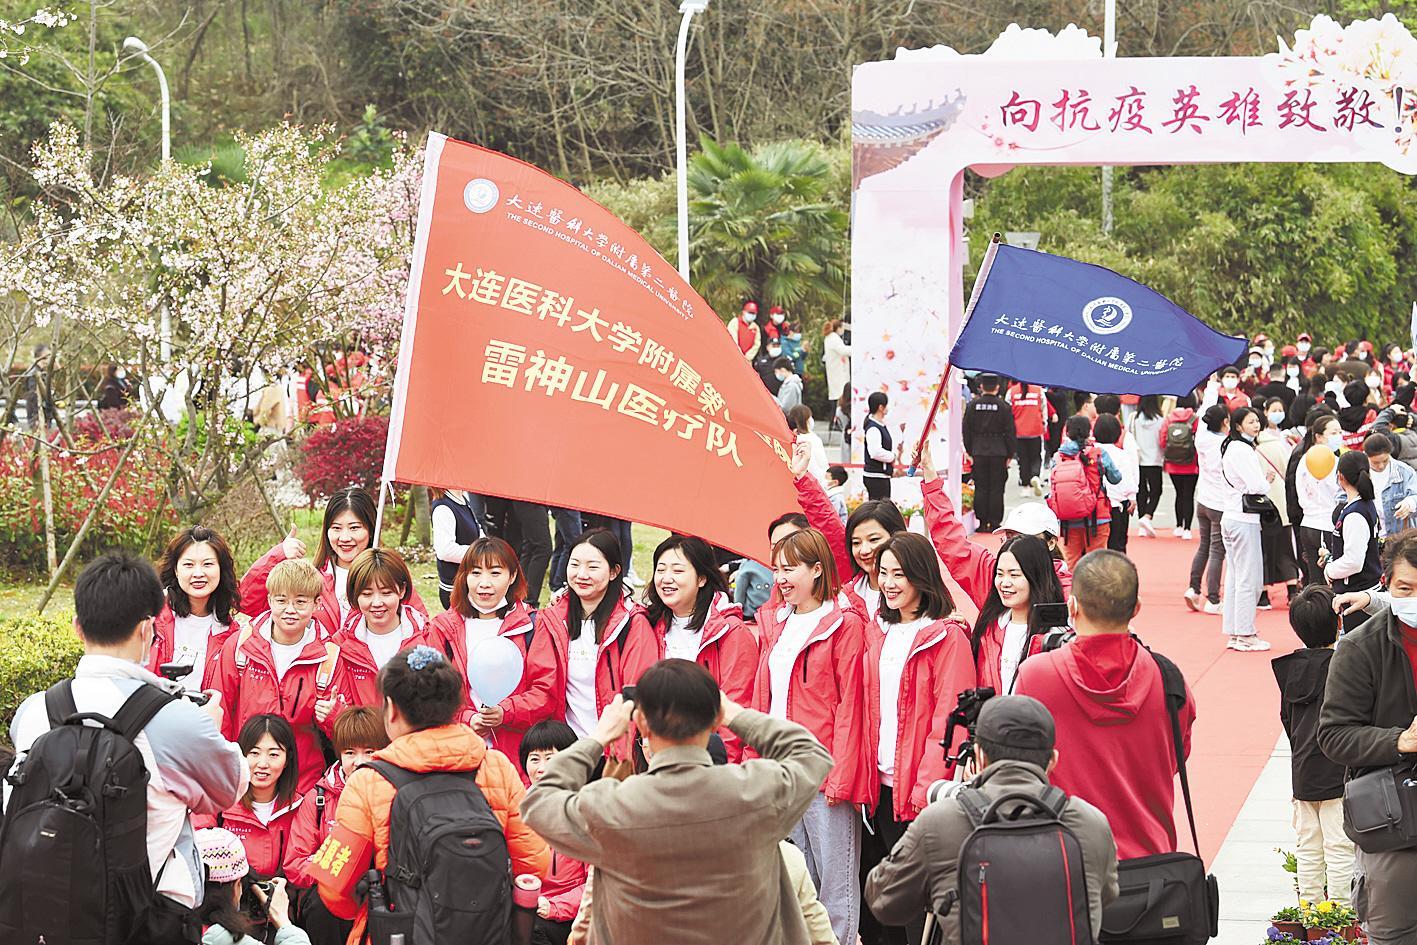 武汉大学盛情邀请 “鄂”的亲人欣然赴约  抗疫英雄及家属万余人回“珈”赏樱